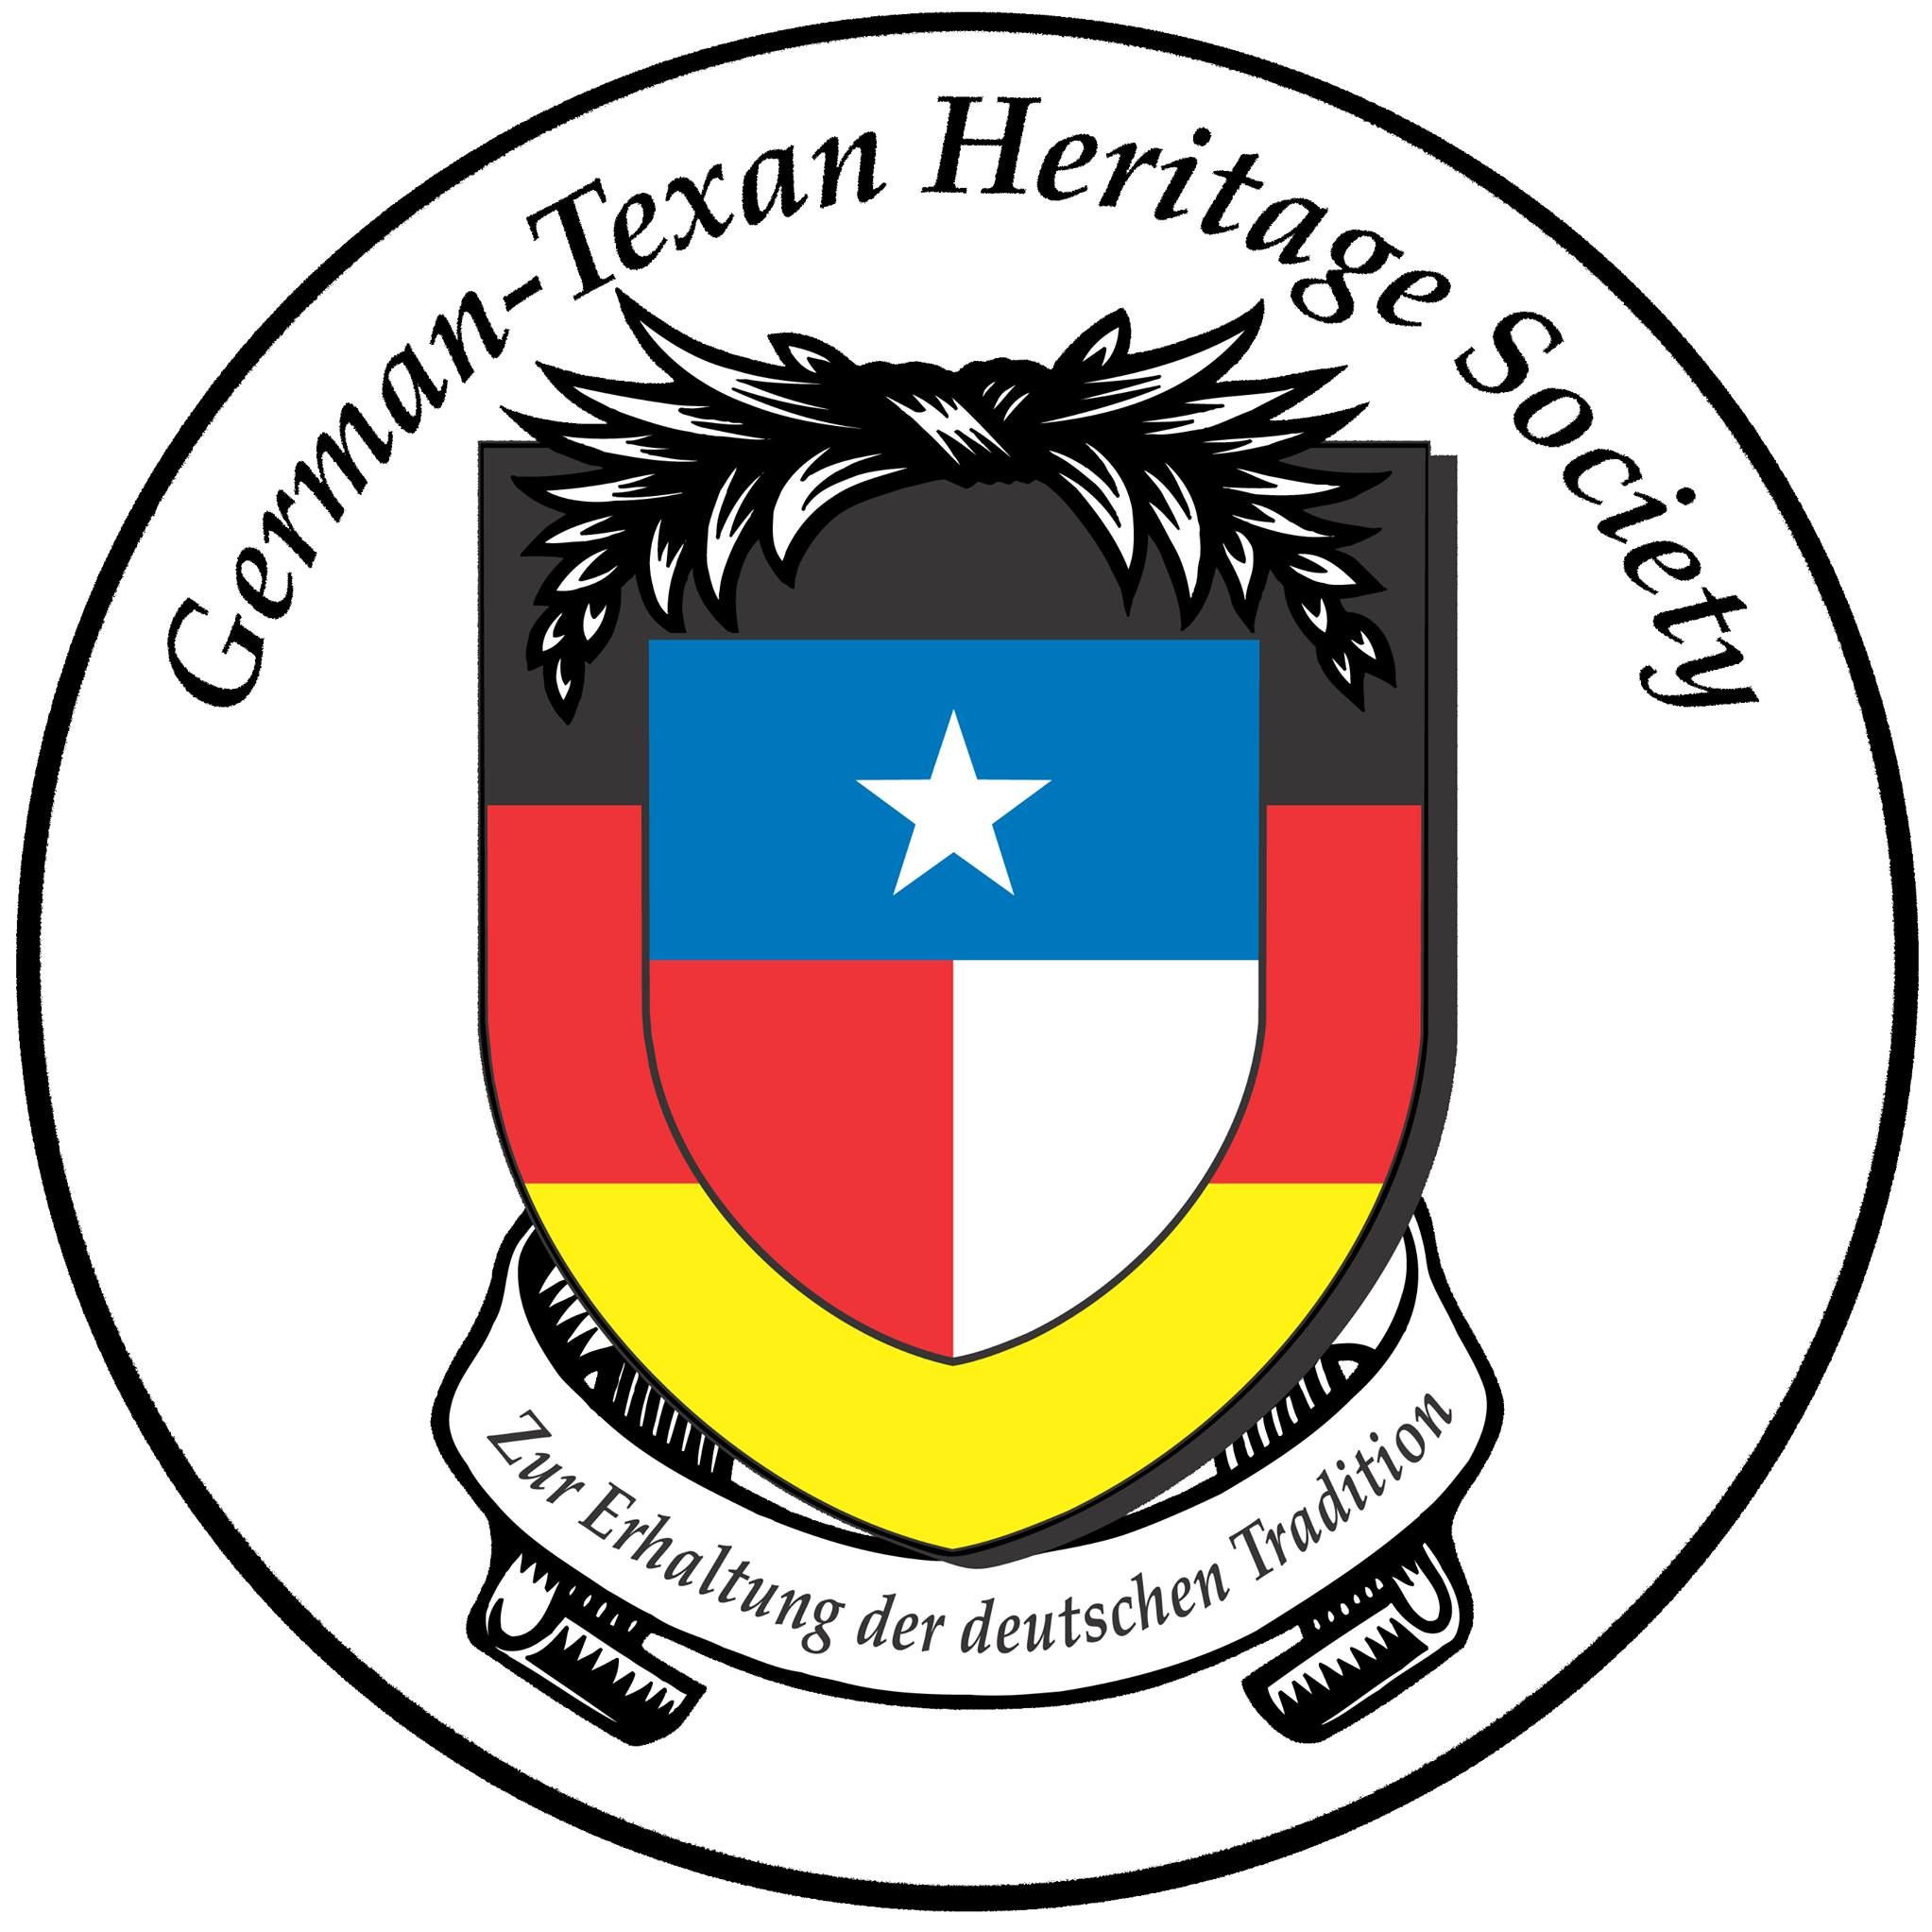 German Organization in Dallas Texas - German Texan Heritage Society